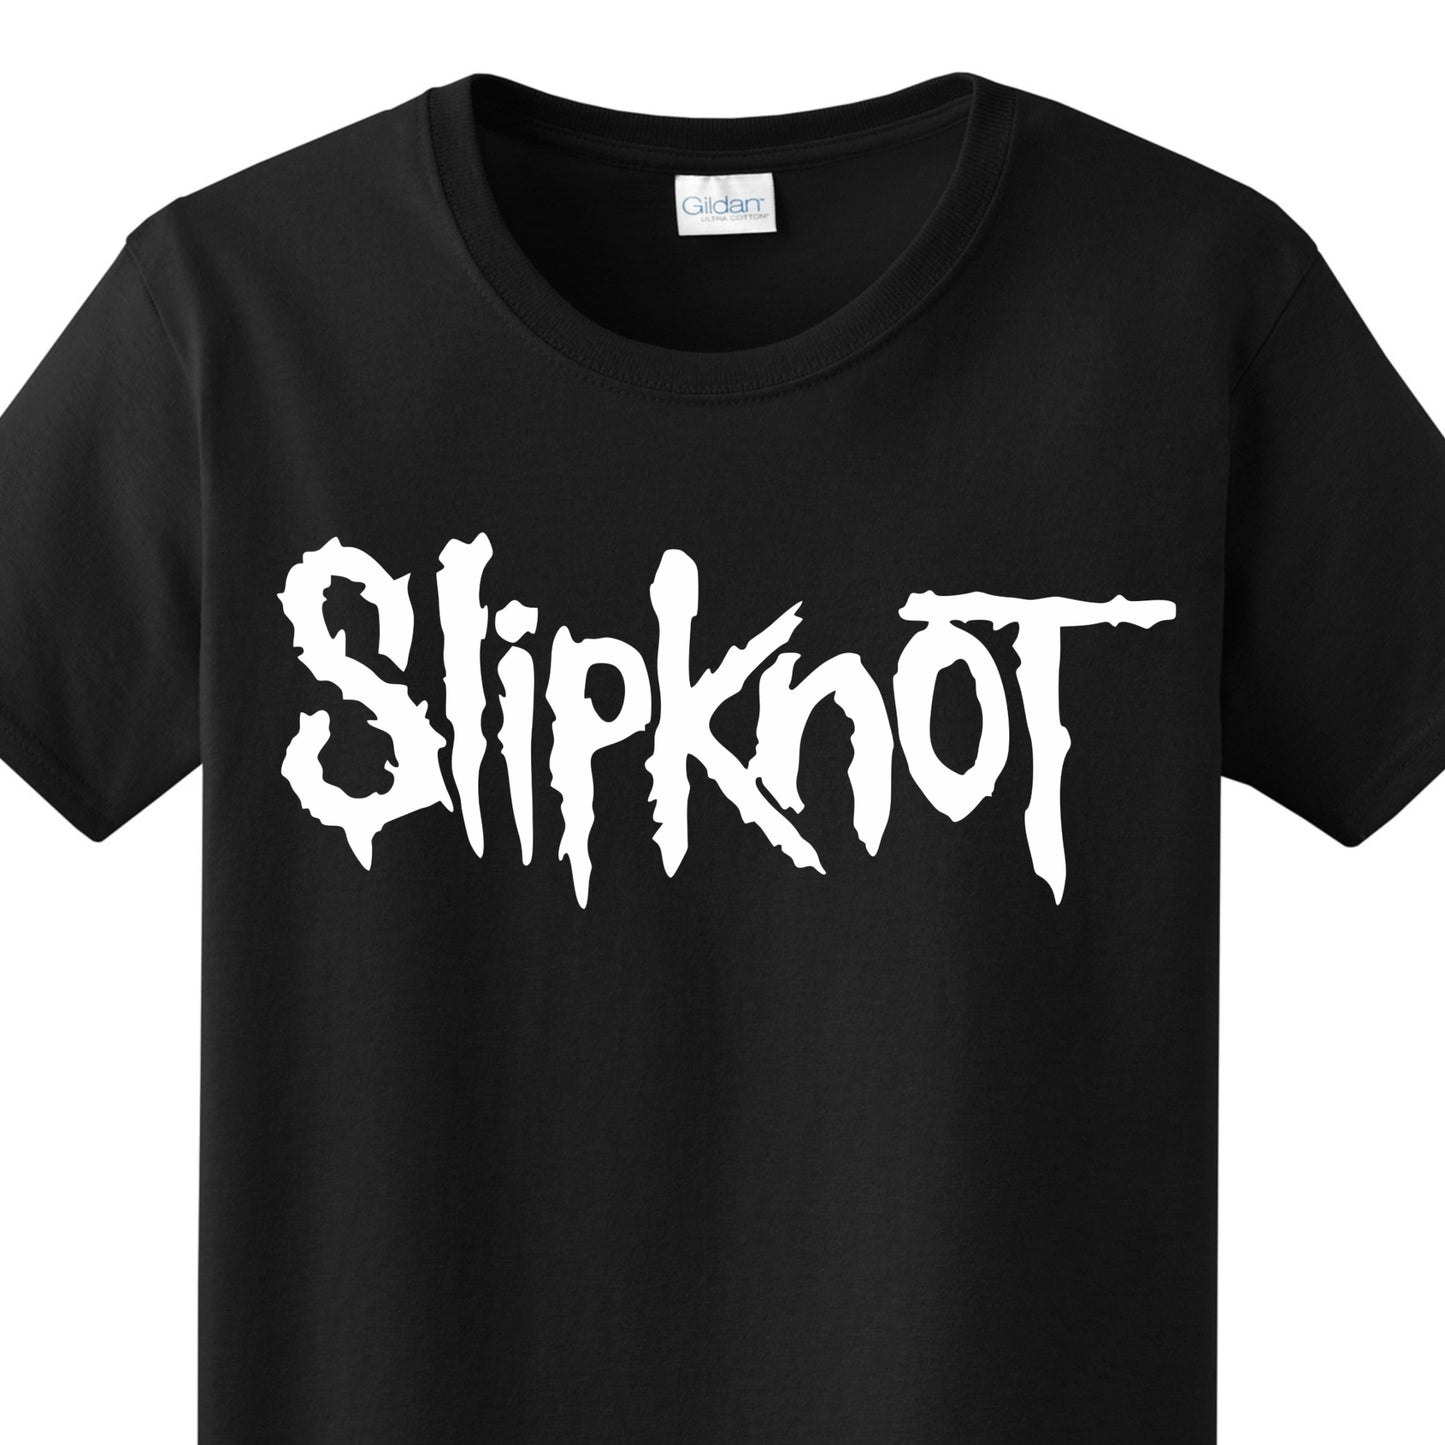 Radical Band  Men's Shirts - Slipknot (Black) - MYSTYLEMYCLOTHING